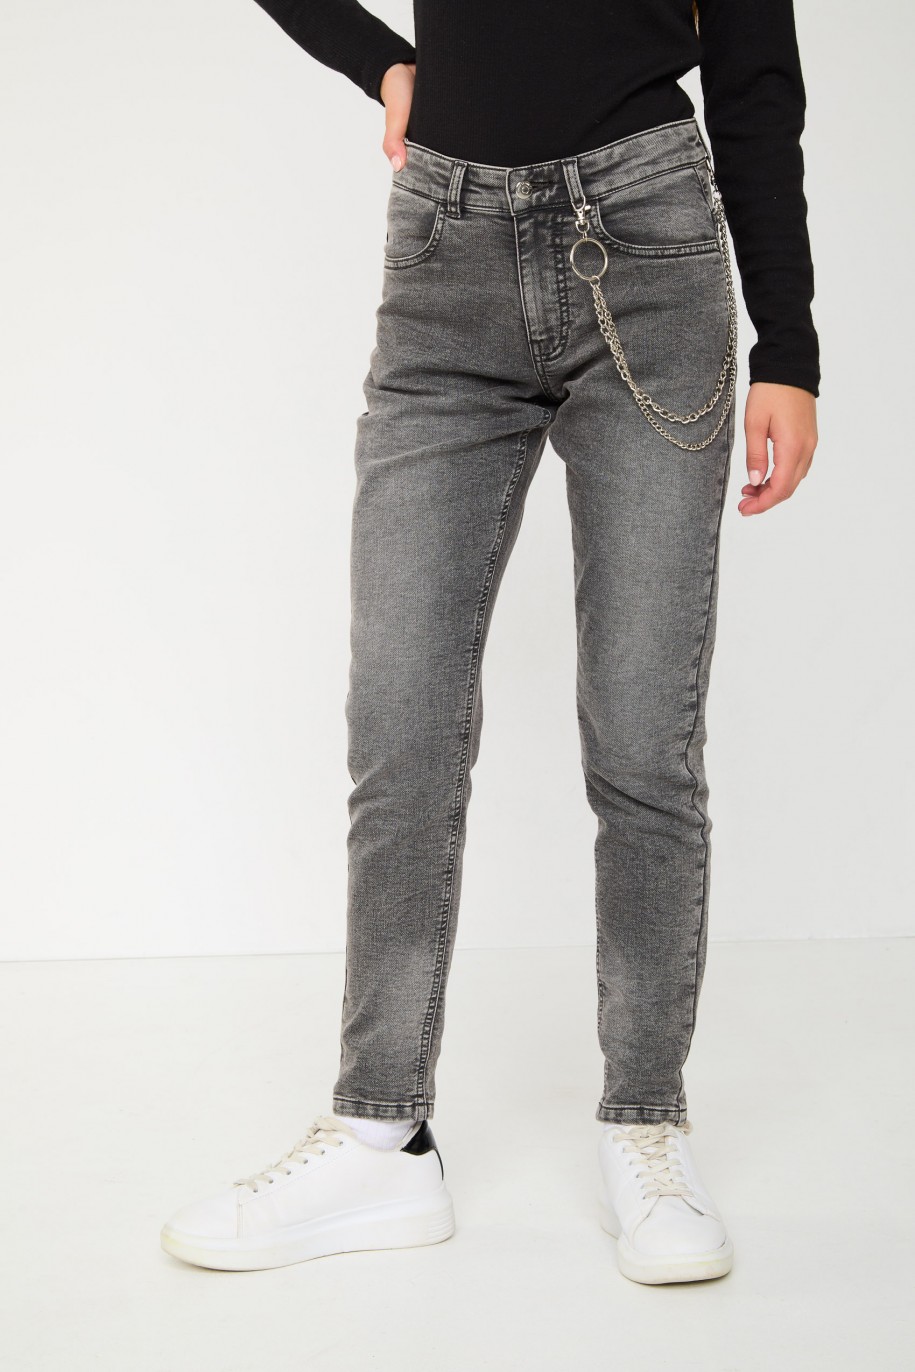 Szare jeansowe spodnie typu BAGGY - 43846